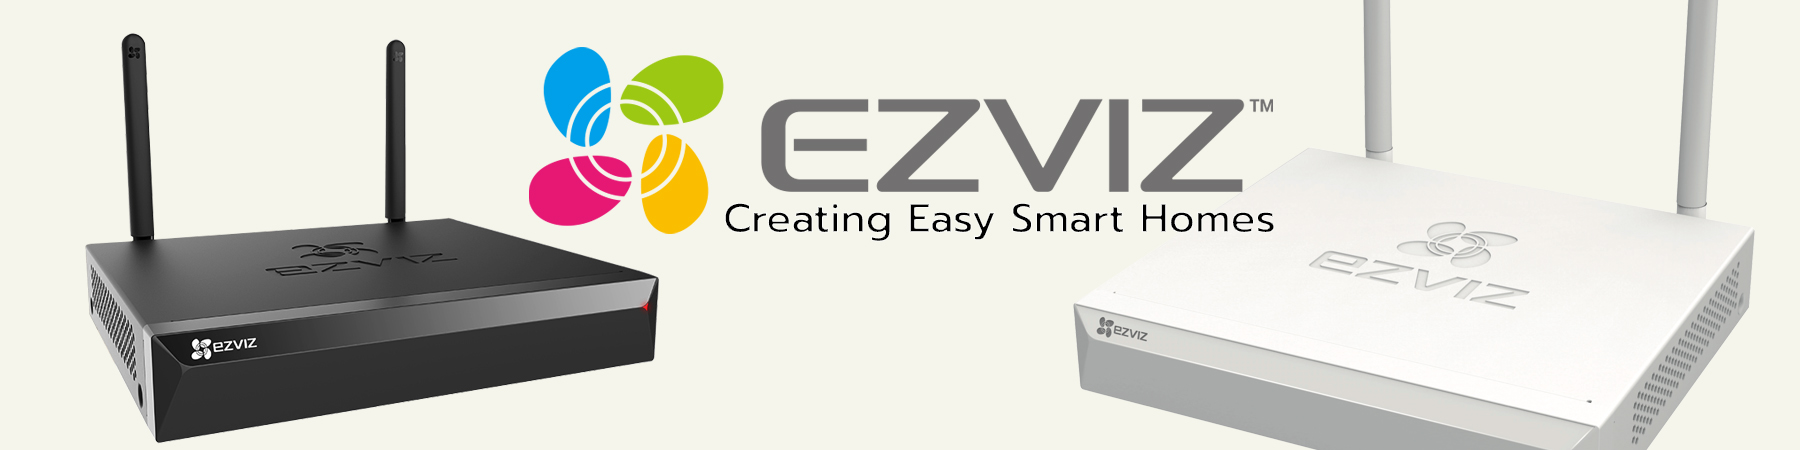 Ezviz Wireless NVR,เครื่องบันทึก Wi-Fi,เครื่องบันทึก ไร้สาย,เครื่องบันทึก Ezviz,NVR X5C-4,NVR X5S-8W,เครื่องบันทึก Ezviz 4ช่อง,เครื่องบันทึก Ezviz 8ช่อง